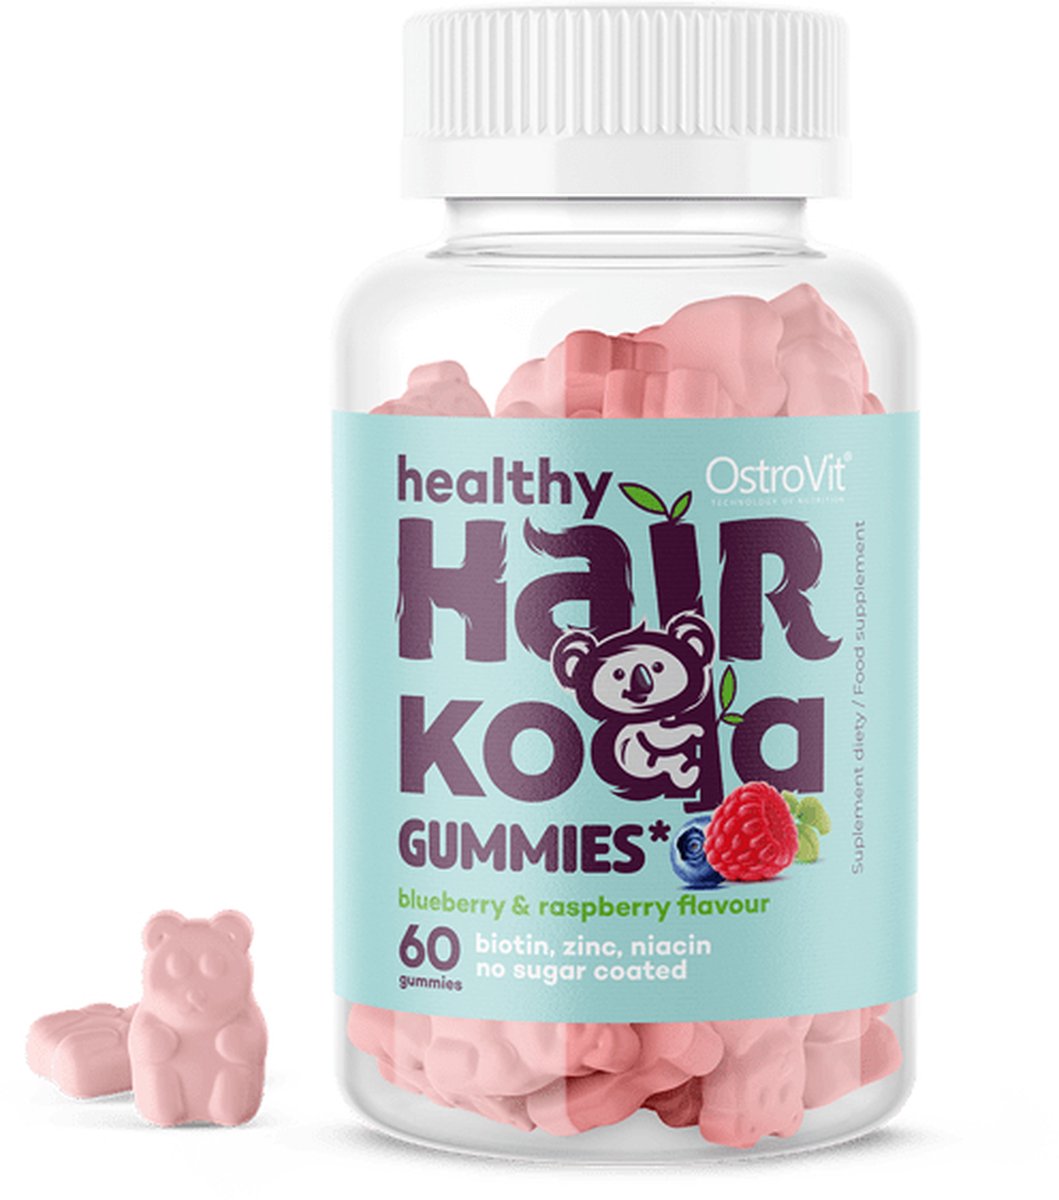 Vitaminen - Healthy Hair Koala - 60 Gummies - OstroVit + Pillendoos